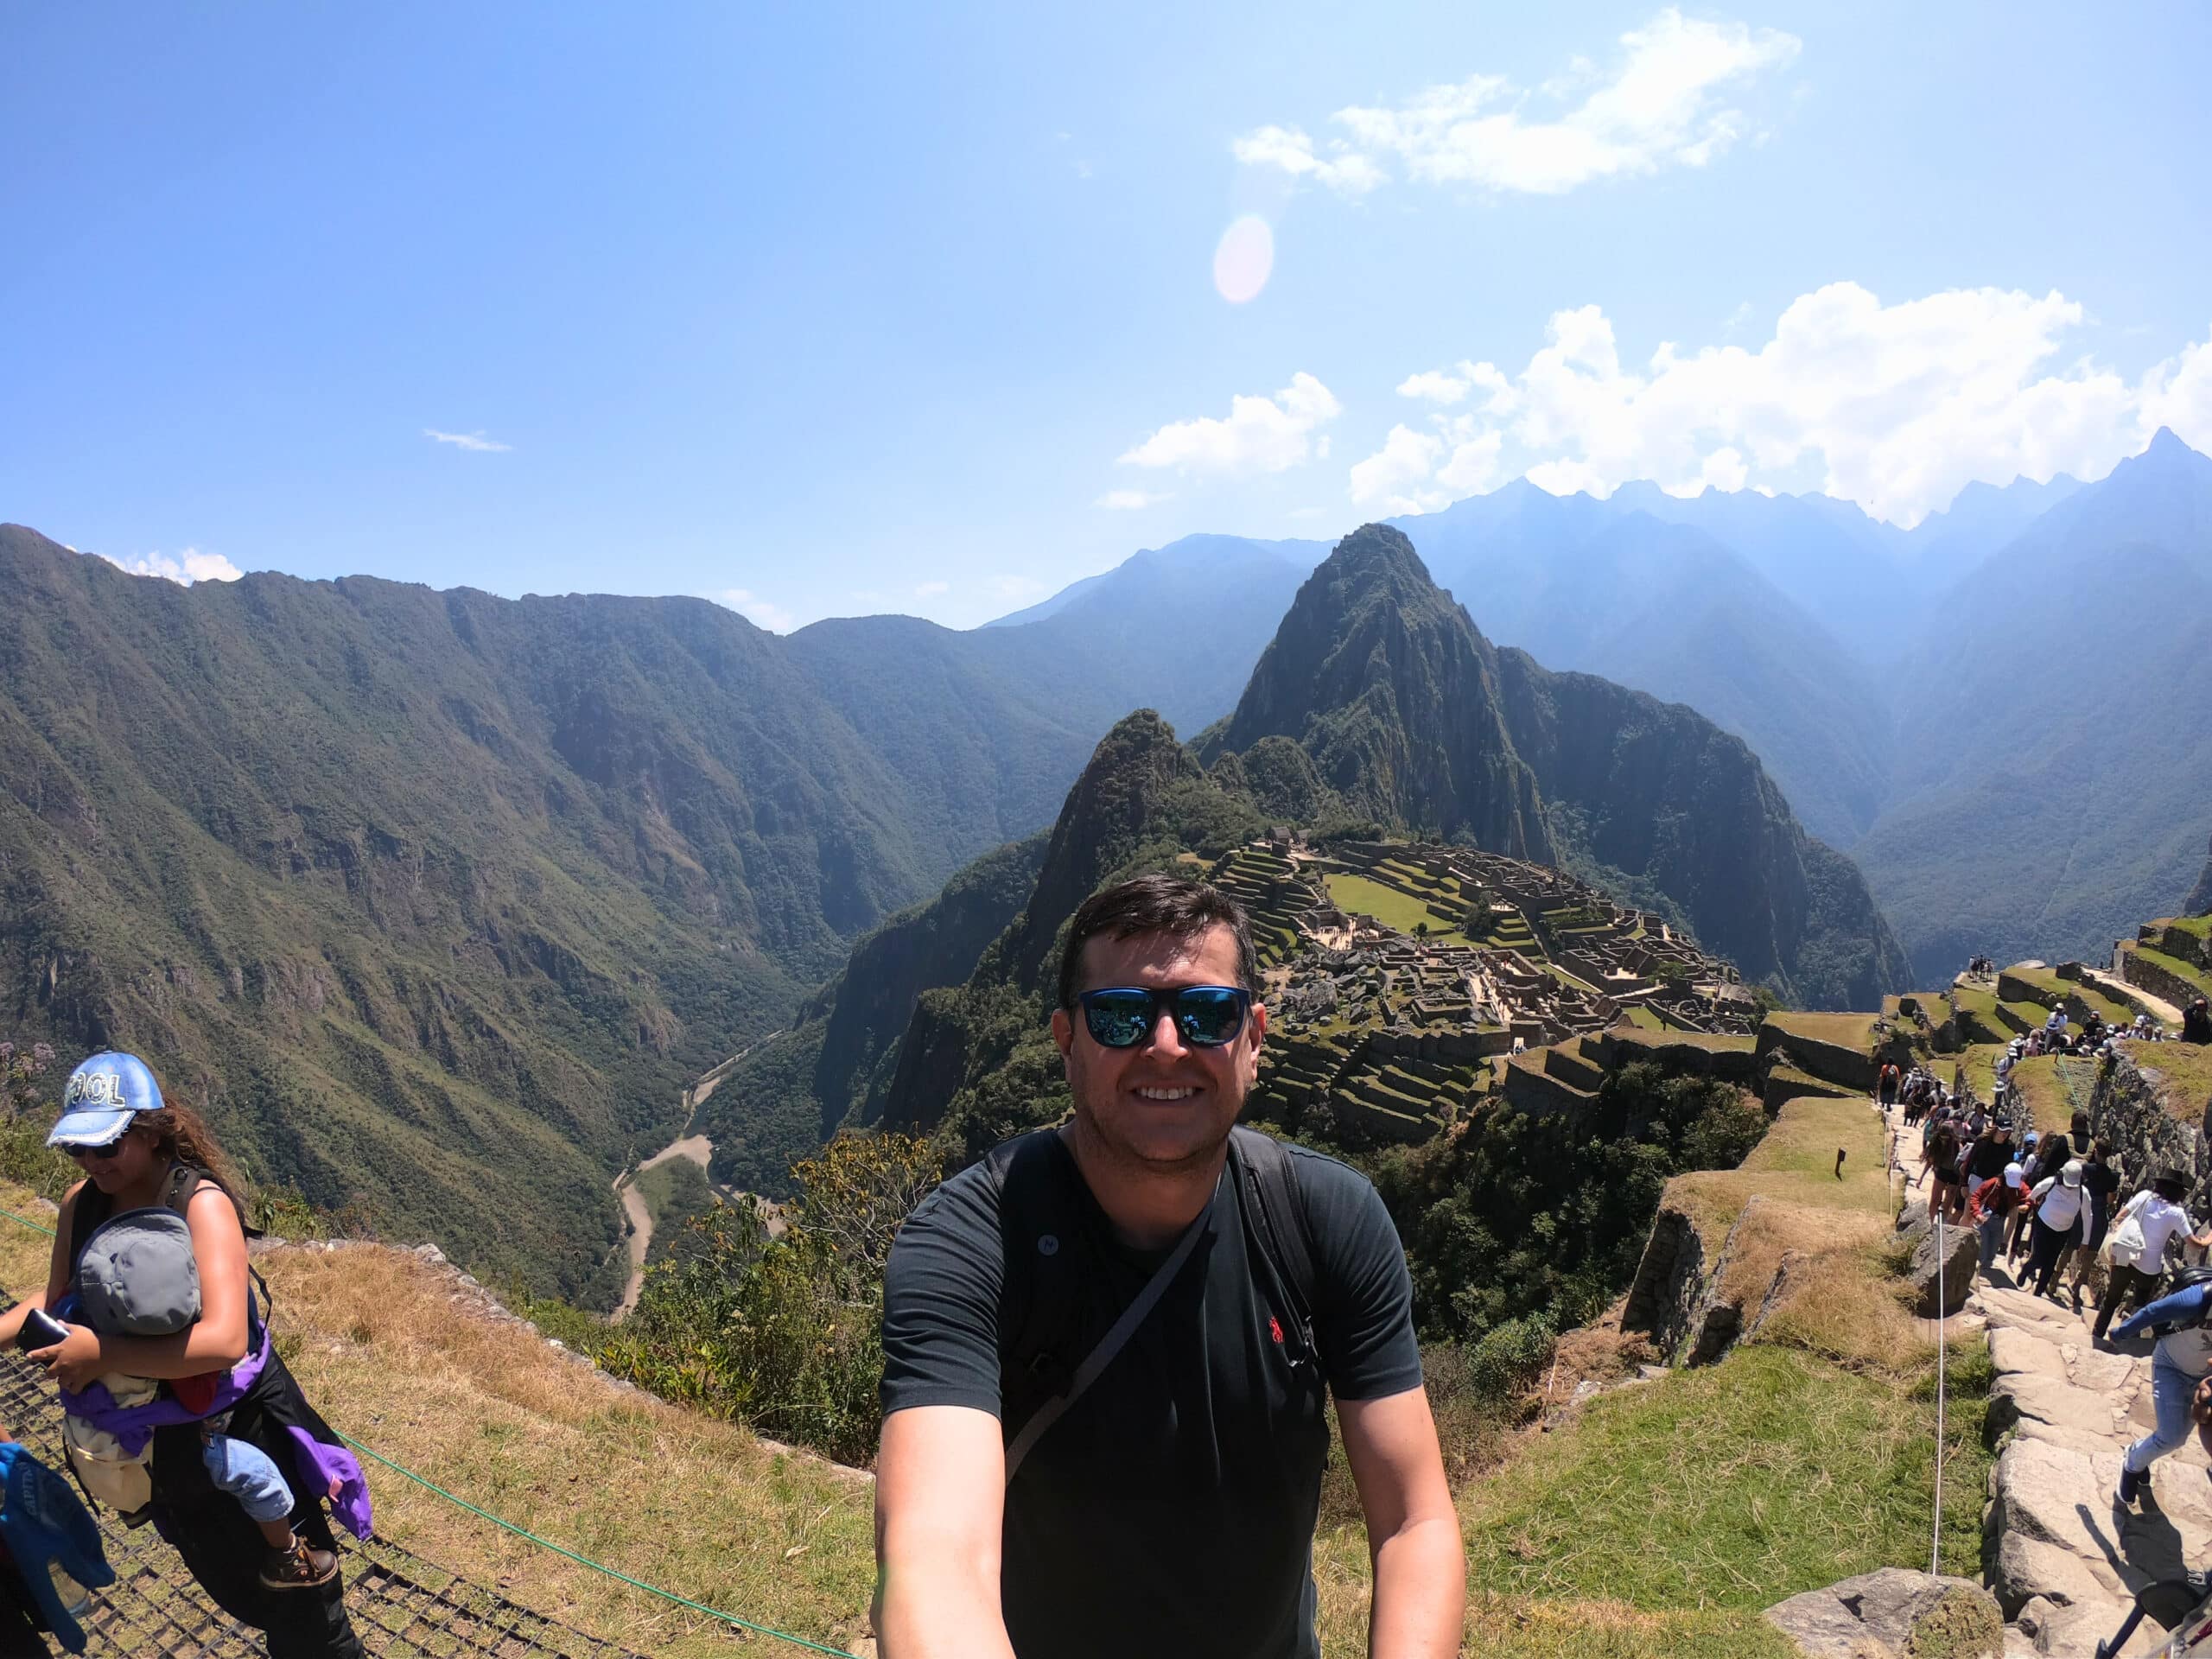 paisagem panorâmica de Machu Picchu, mostrando toda a cadeia de montanhas ao redor da cidadela, além do rio urubamba mais abaixo. No centro da imagem há um homem de óculos escuros e sorrindo para a câmera.